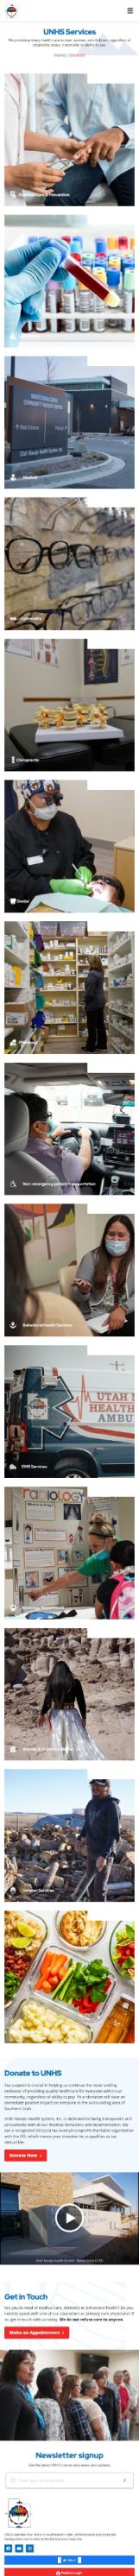 Utah Navajo Health System Inc. Mobile